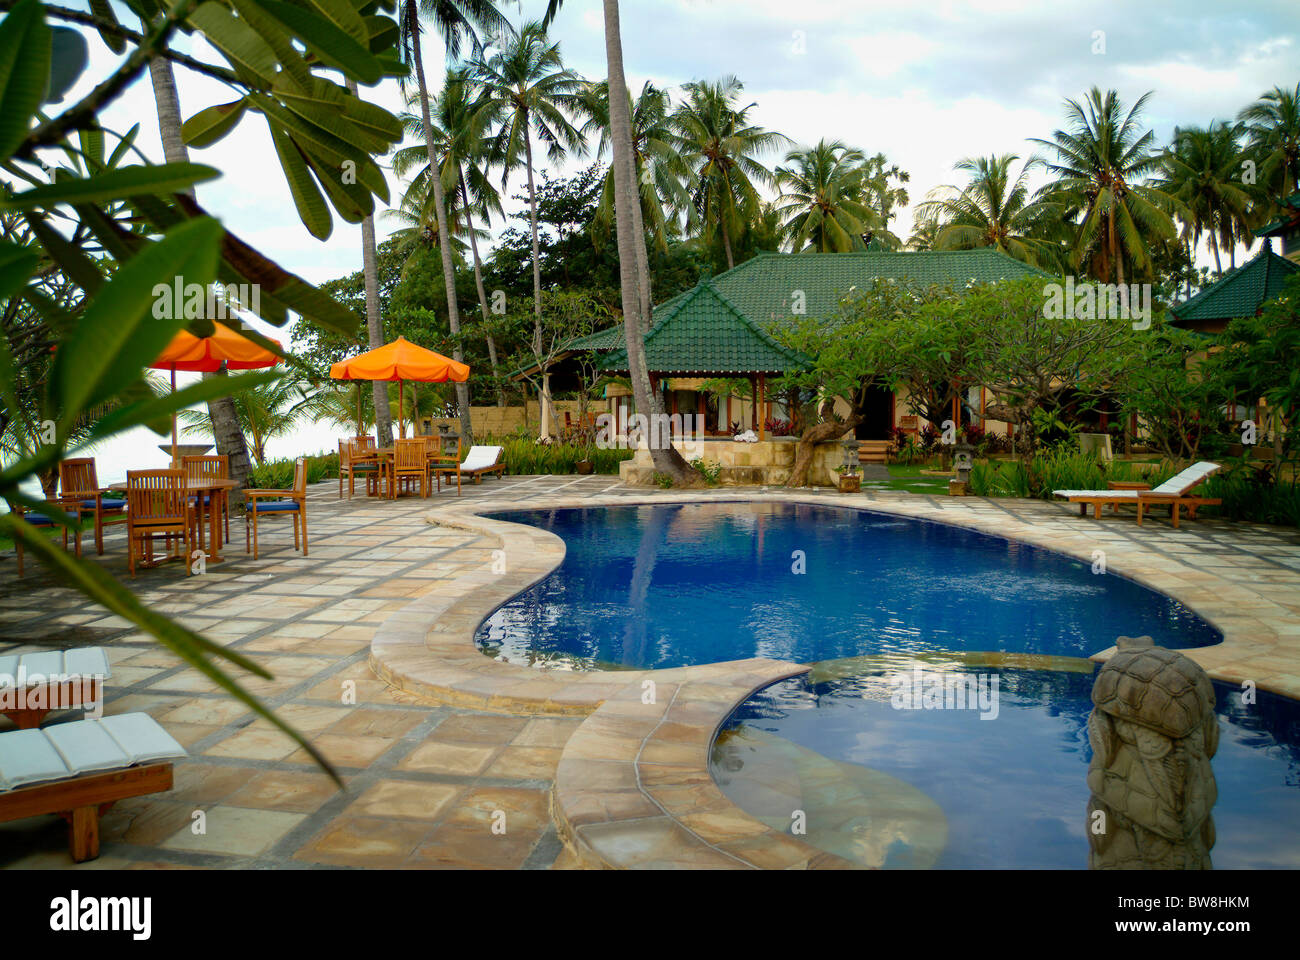 Poincianna Resort im tropischen Dorf von Tejakula, Bali, Indonesien. Ein idyllischer Ort mit einem wunderschönen Pool und Garten. Stockfoto